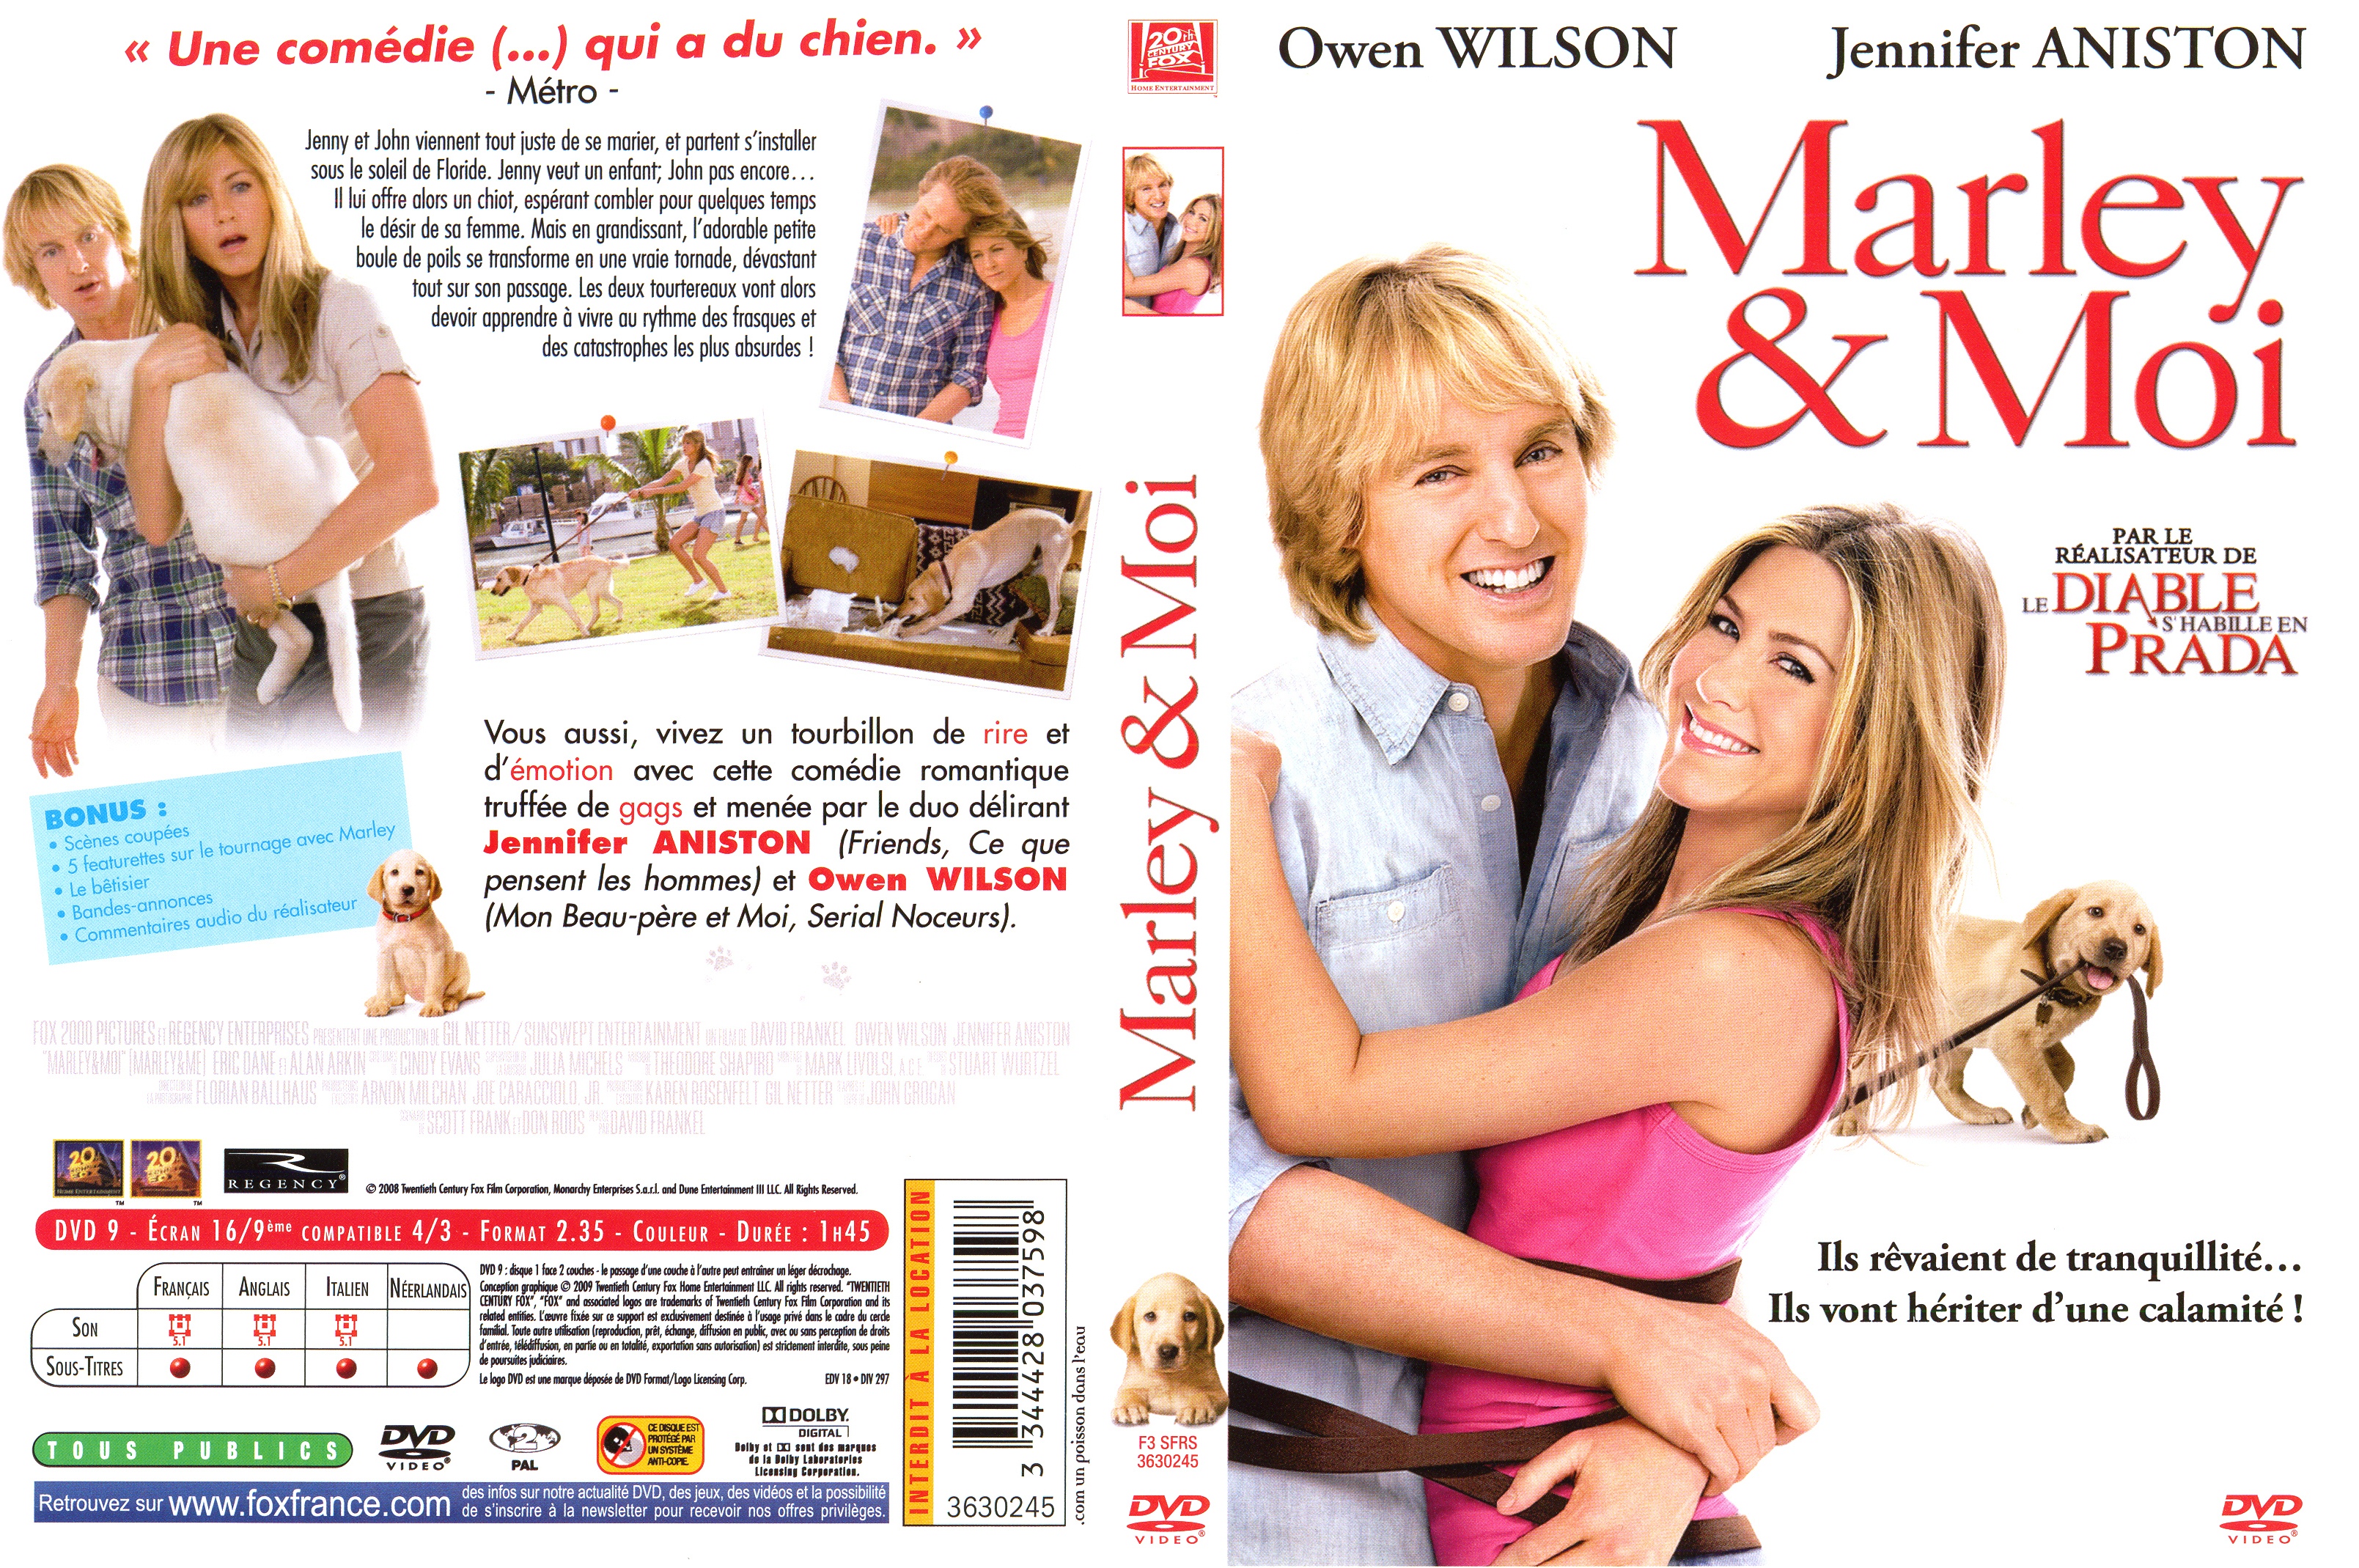 Jaquette DVD Marley et moi v2